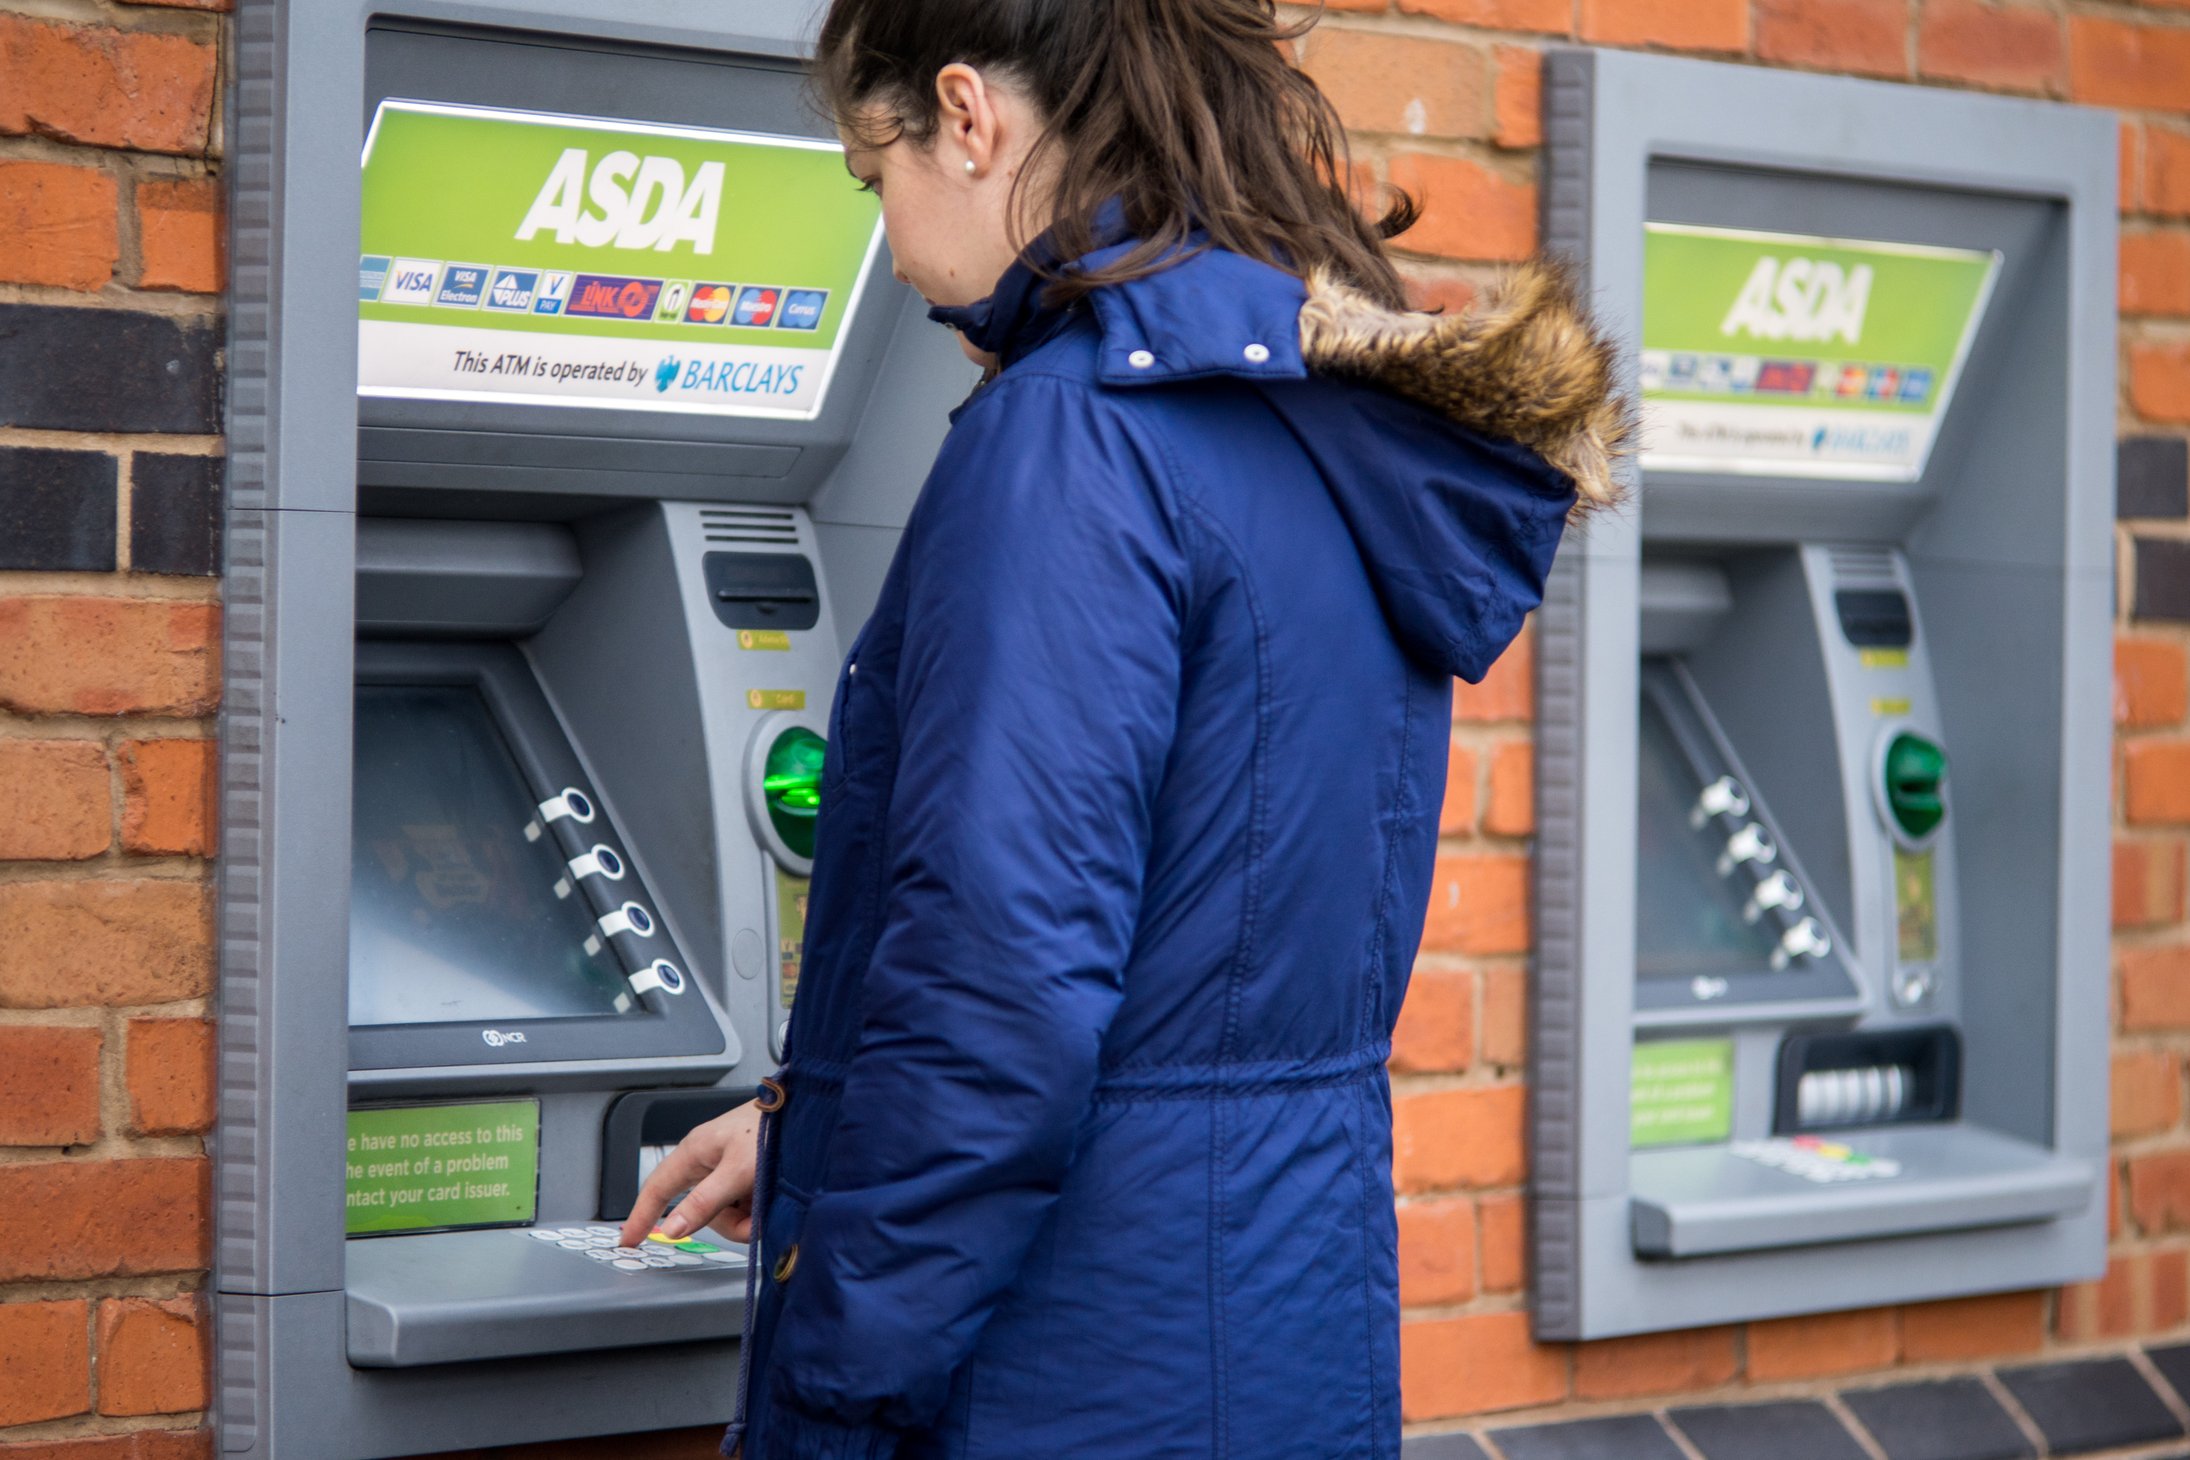 Bank fee. Банкоматы наличные. Туристы с банкоматом. ATM Business.